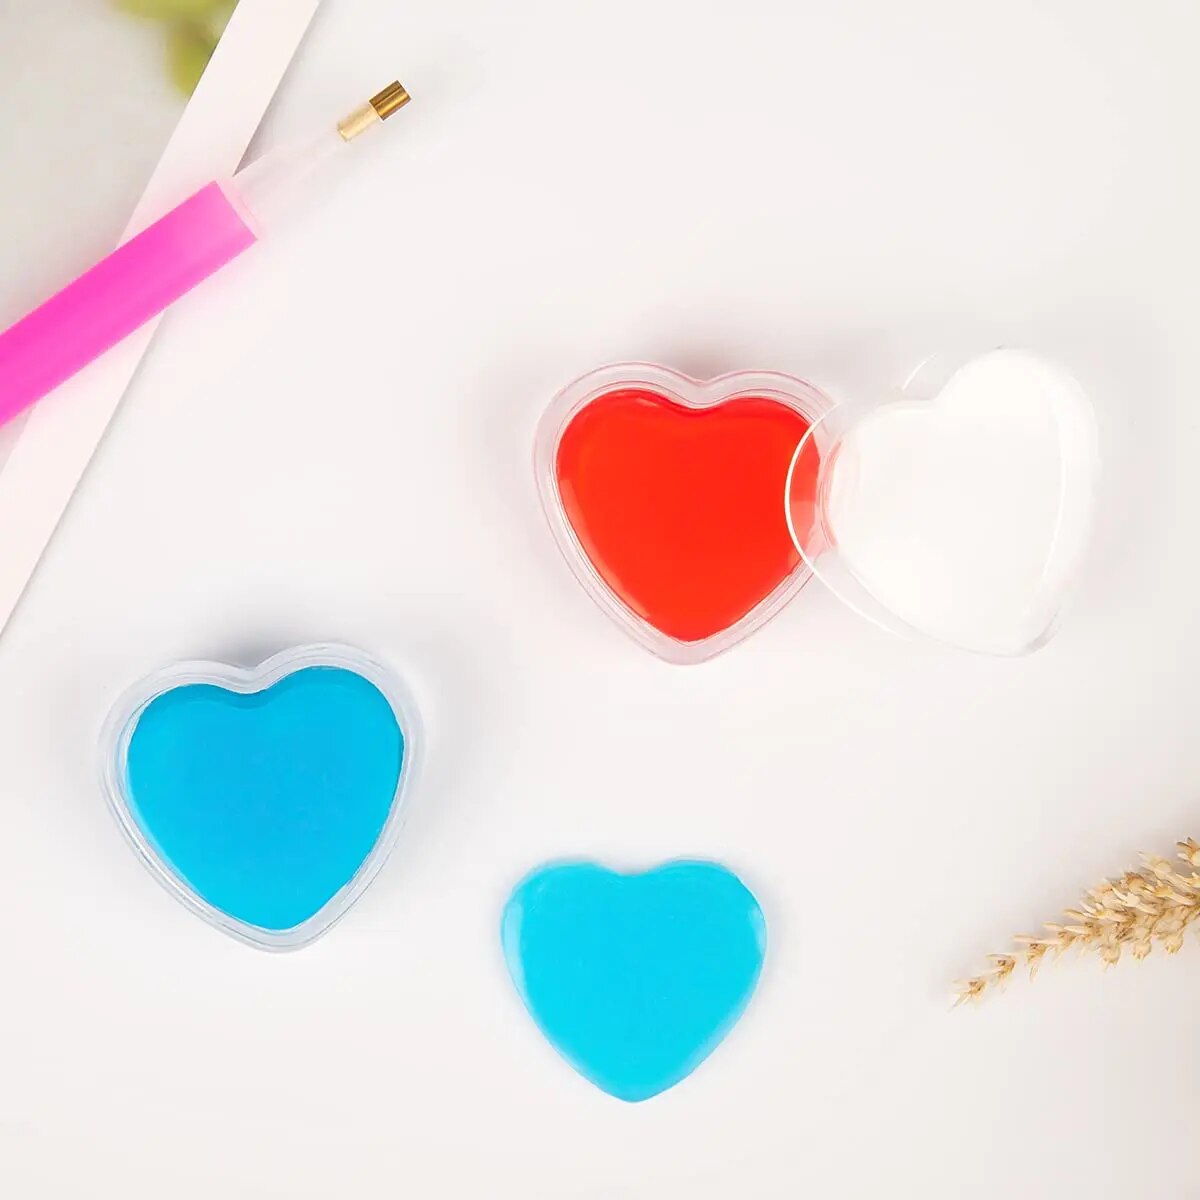 Heart-Shaped Wax With Heart Box